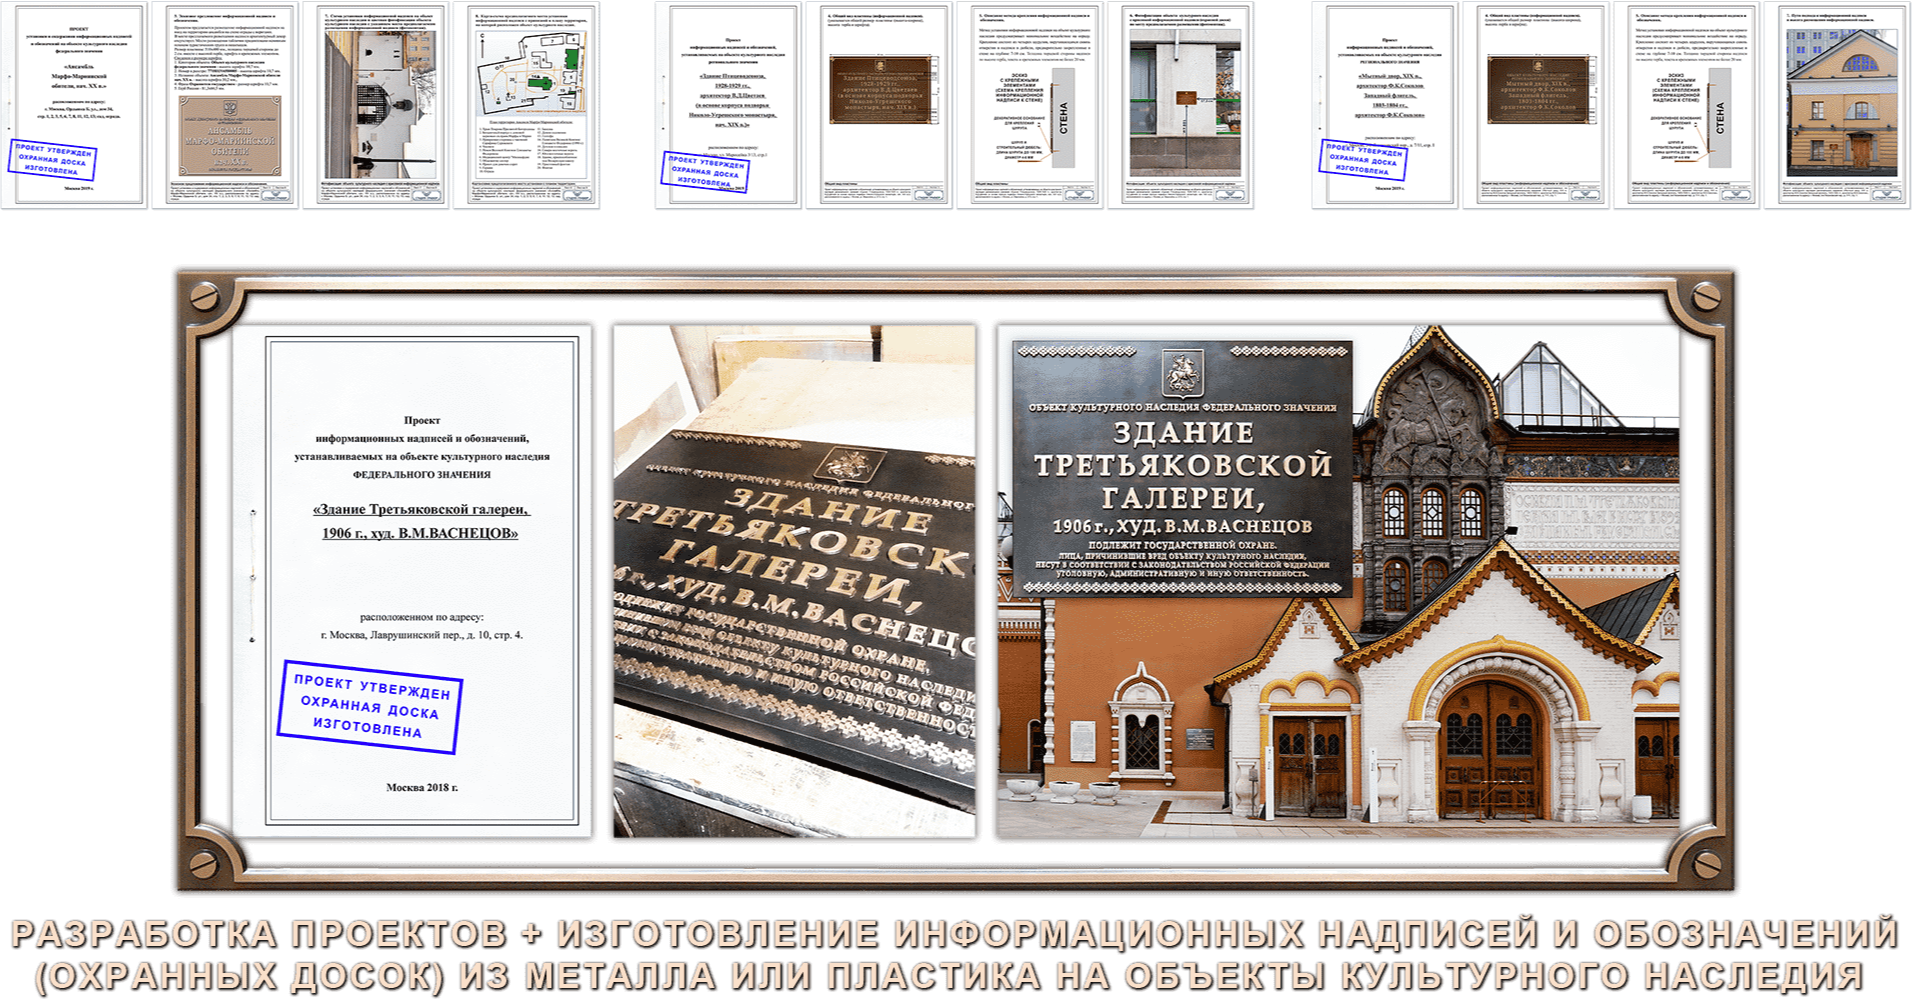 Проекты информационных надписей на объекты культурного наследия